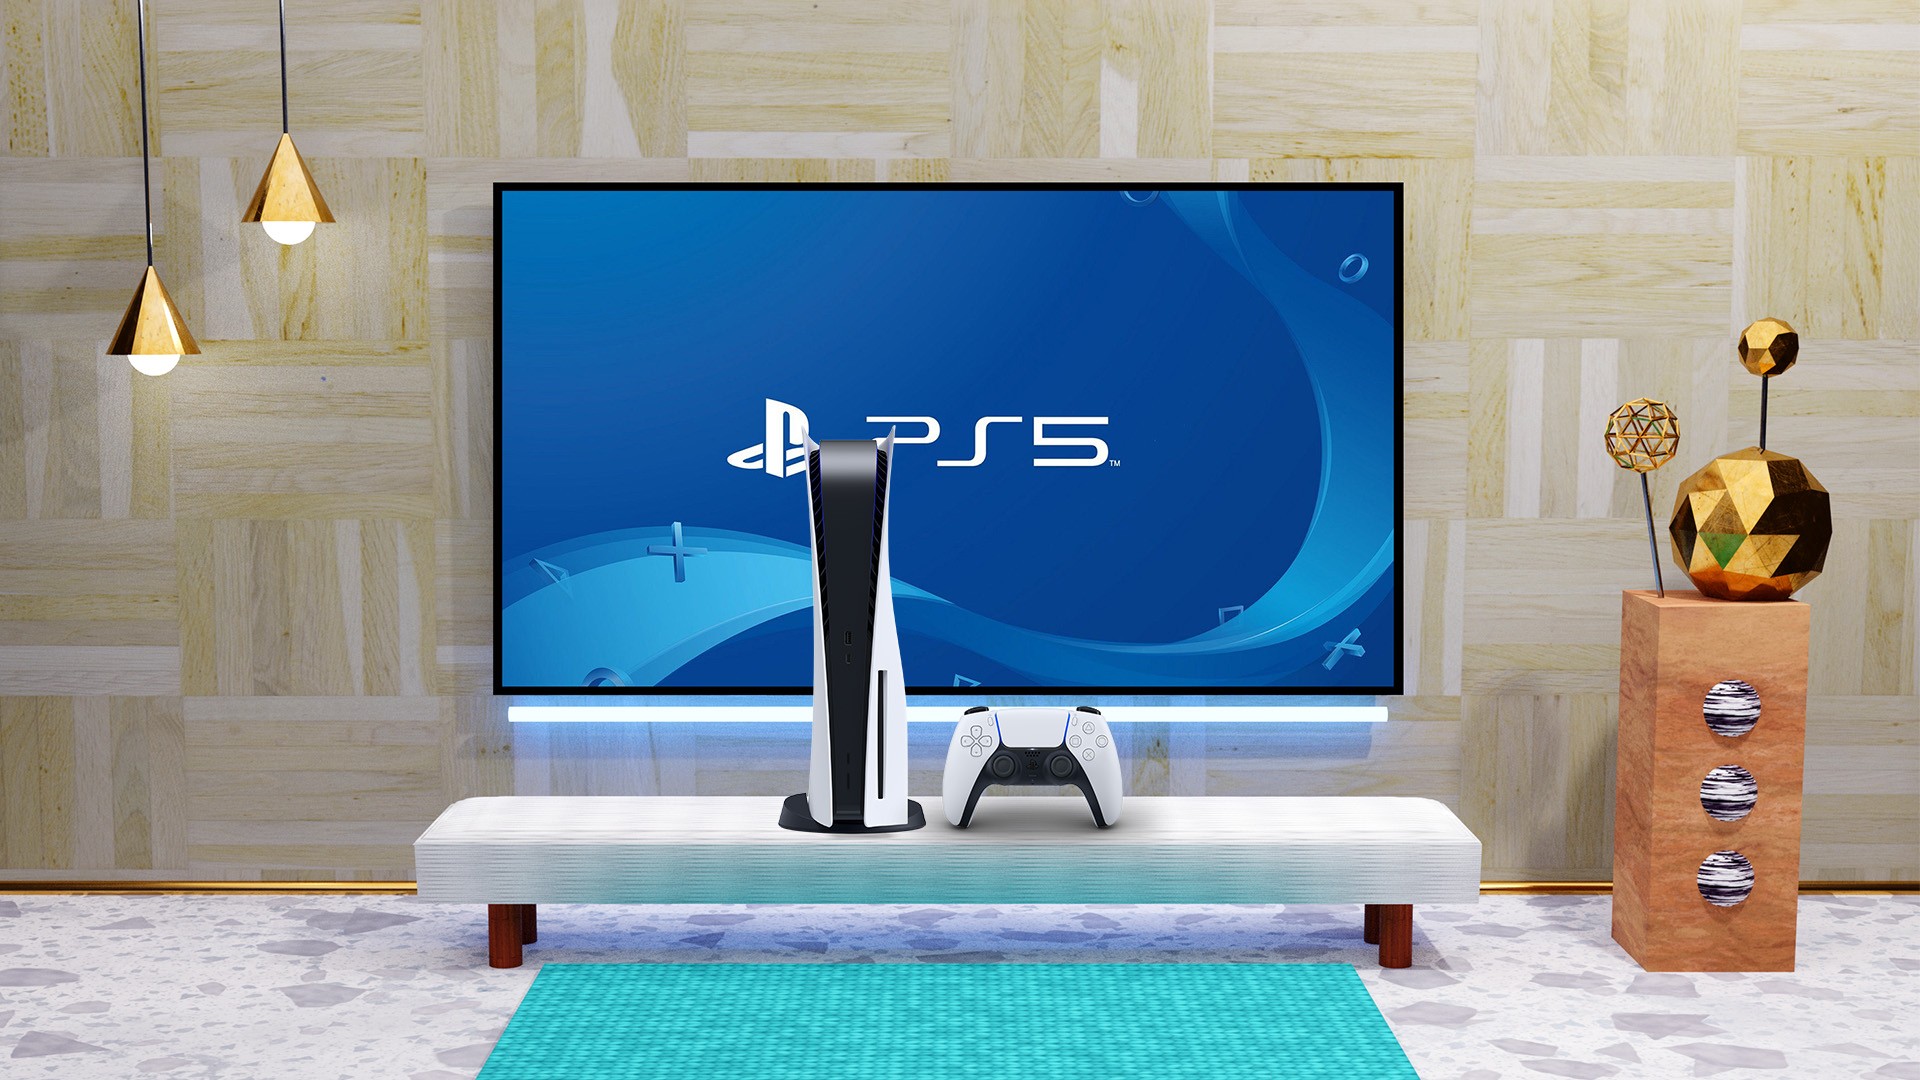 PS4 e PS5 recebem atualização de sistema com melhorias de performance 